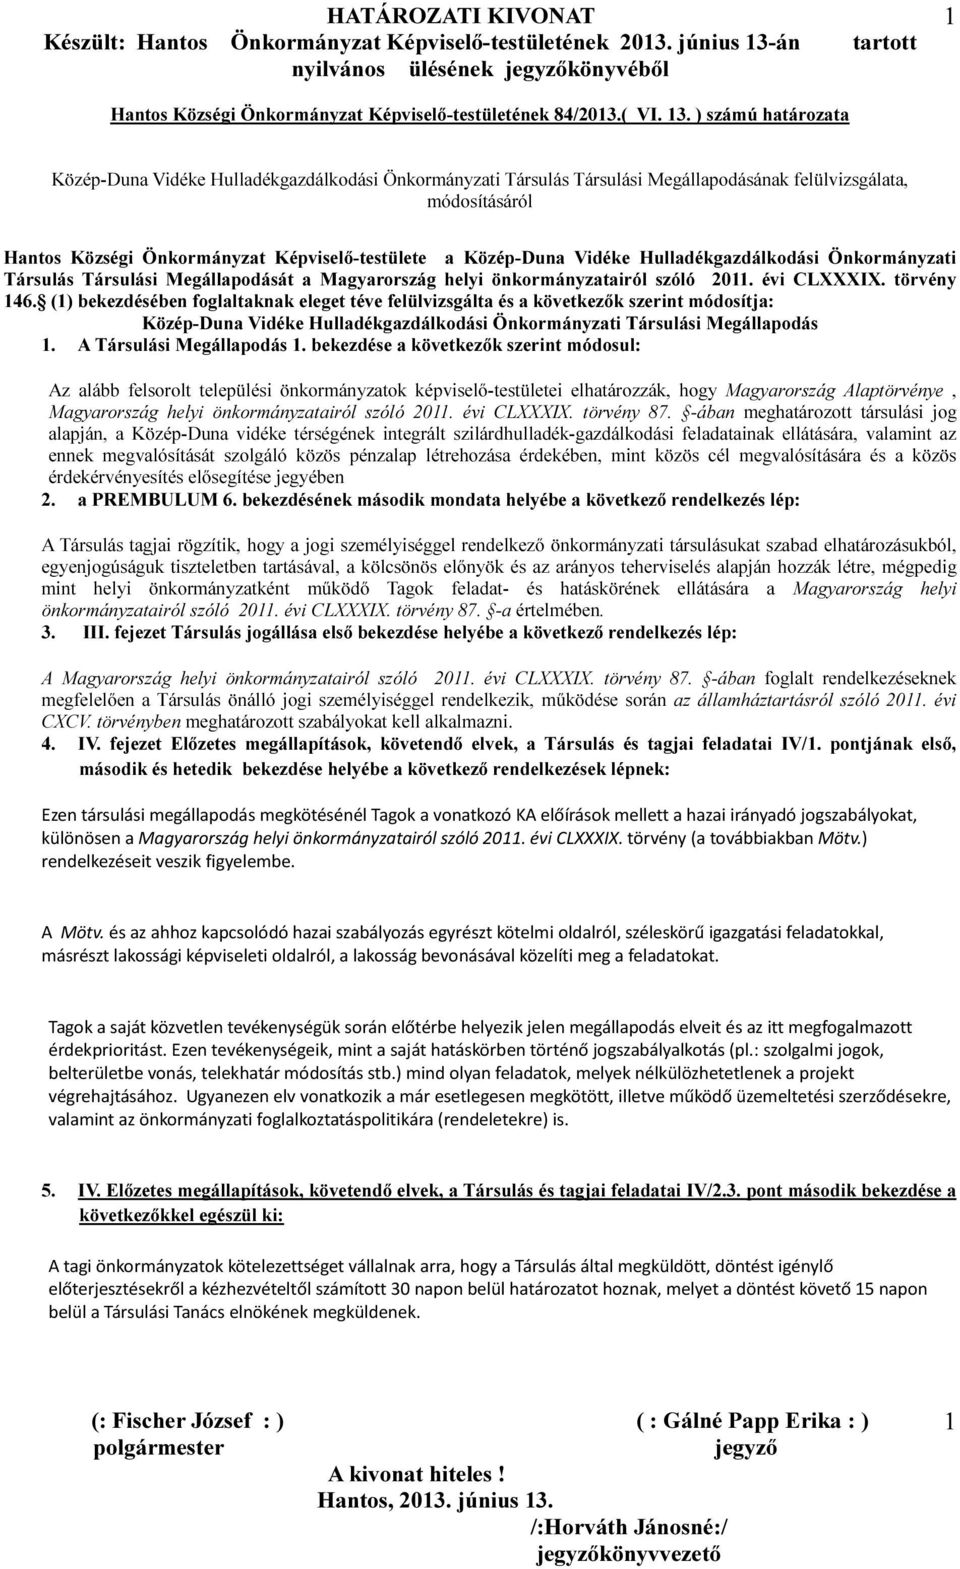 Közép-Duna Vidéke Hulladékgazdálkodási Önkormányzati Társulás Társulási Megállapodását a Magyarország helyi önkormányzatairól szóló 2011. évi CLXXXIX. törvény 146.